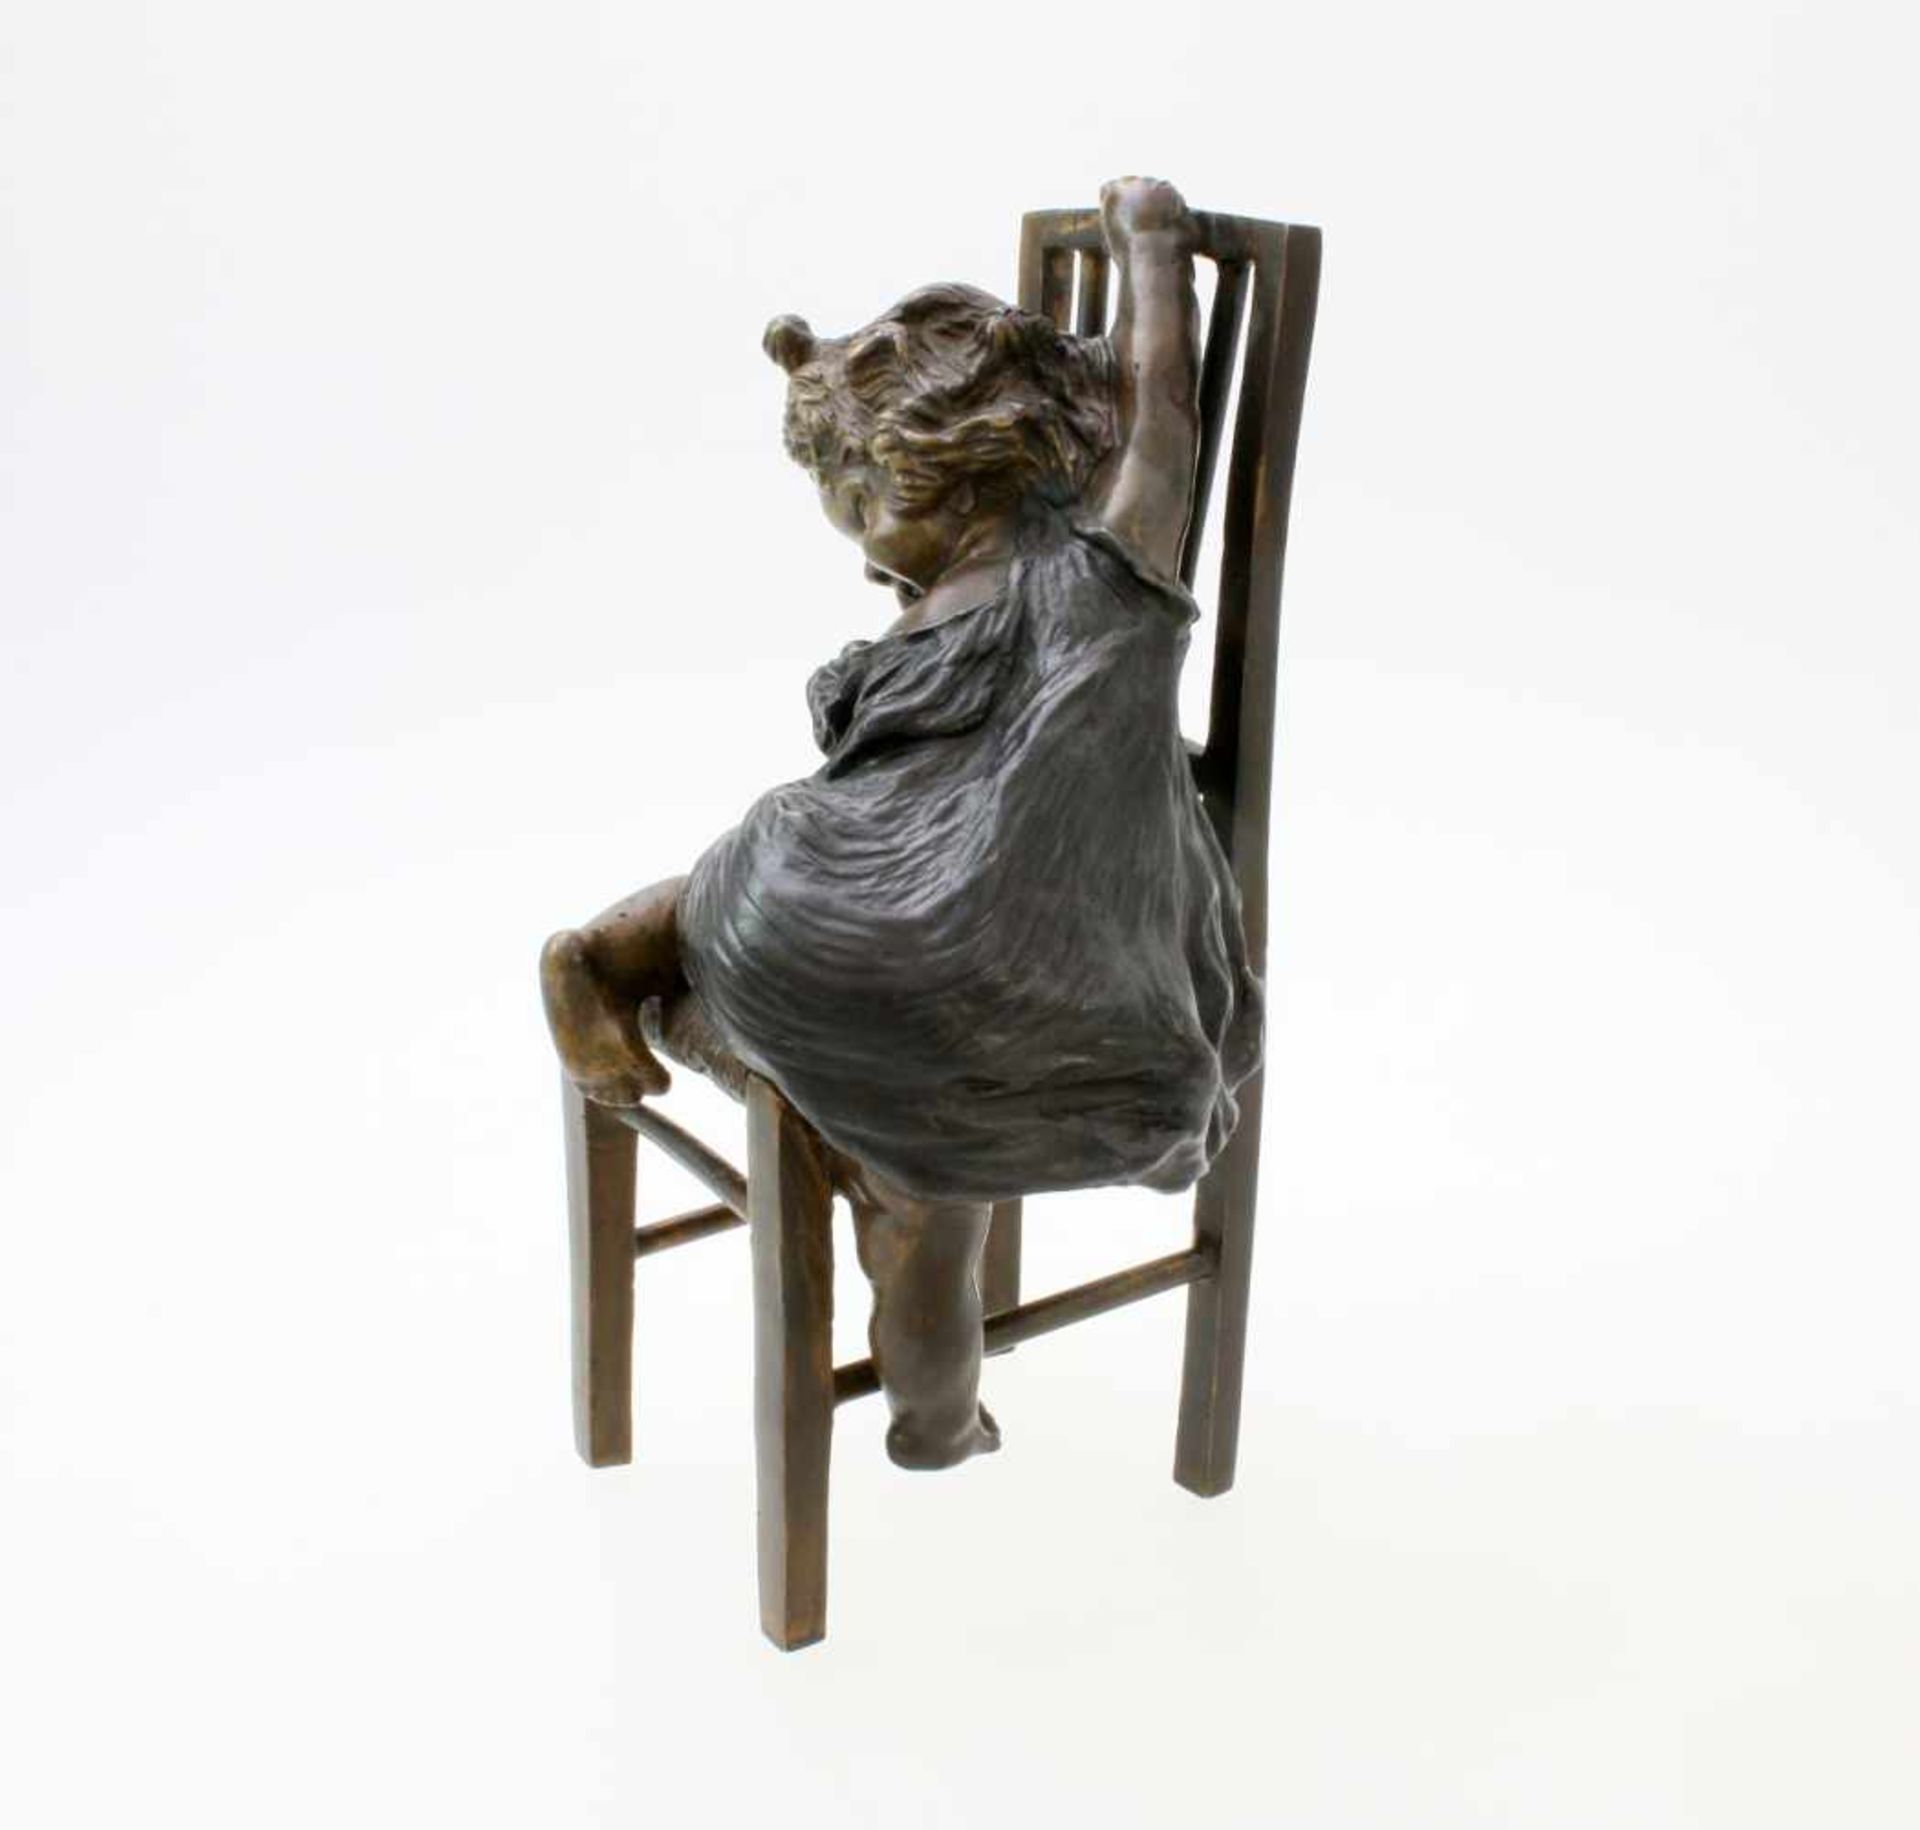 Bronzeskulptur "Kleines Mädchen erklimmt Stuhl" von Juan Clara Ayats (1875 - 1958) Die Skulptur - Bild 2 aus 5